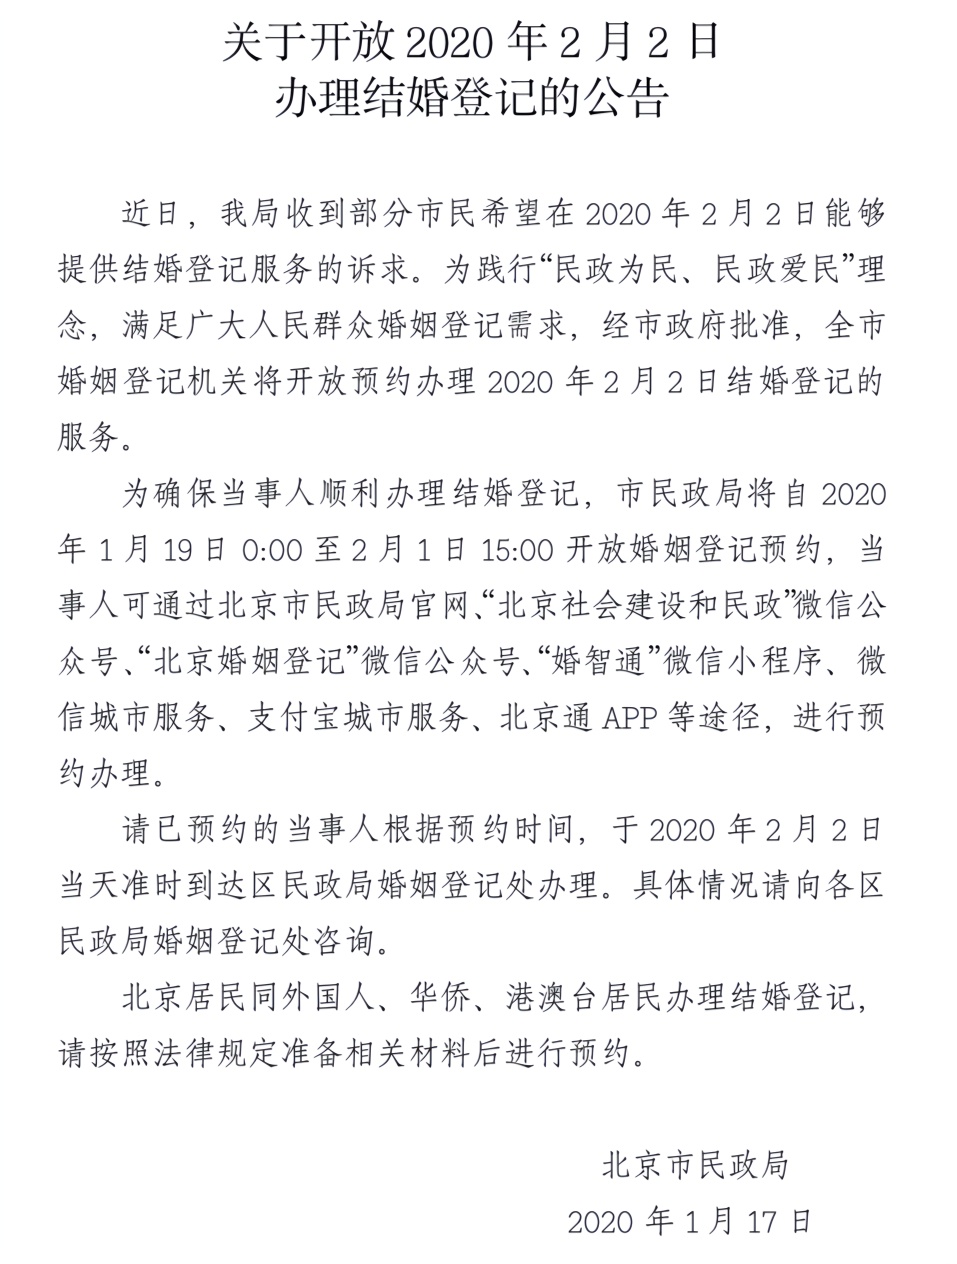 北京市民政局开放2月2日(星期天)结婚登记办理